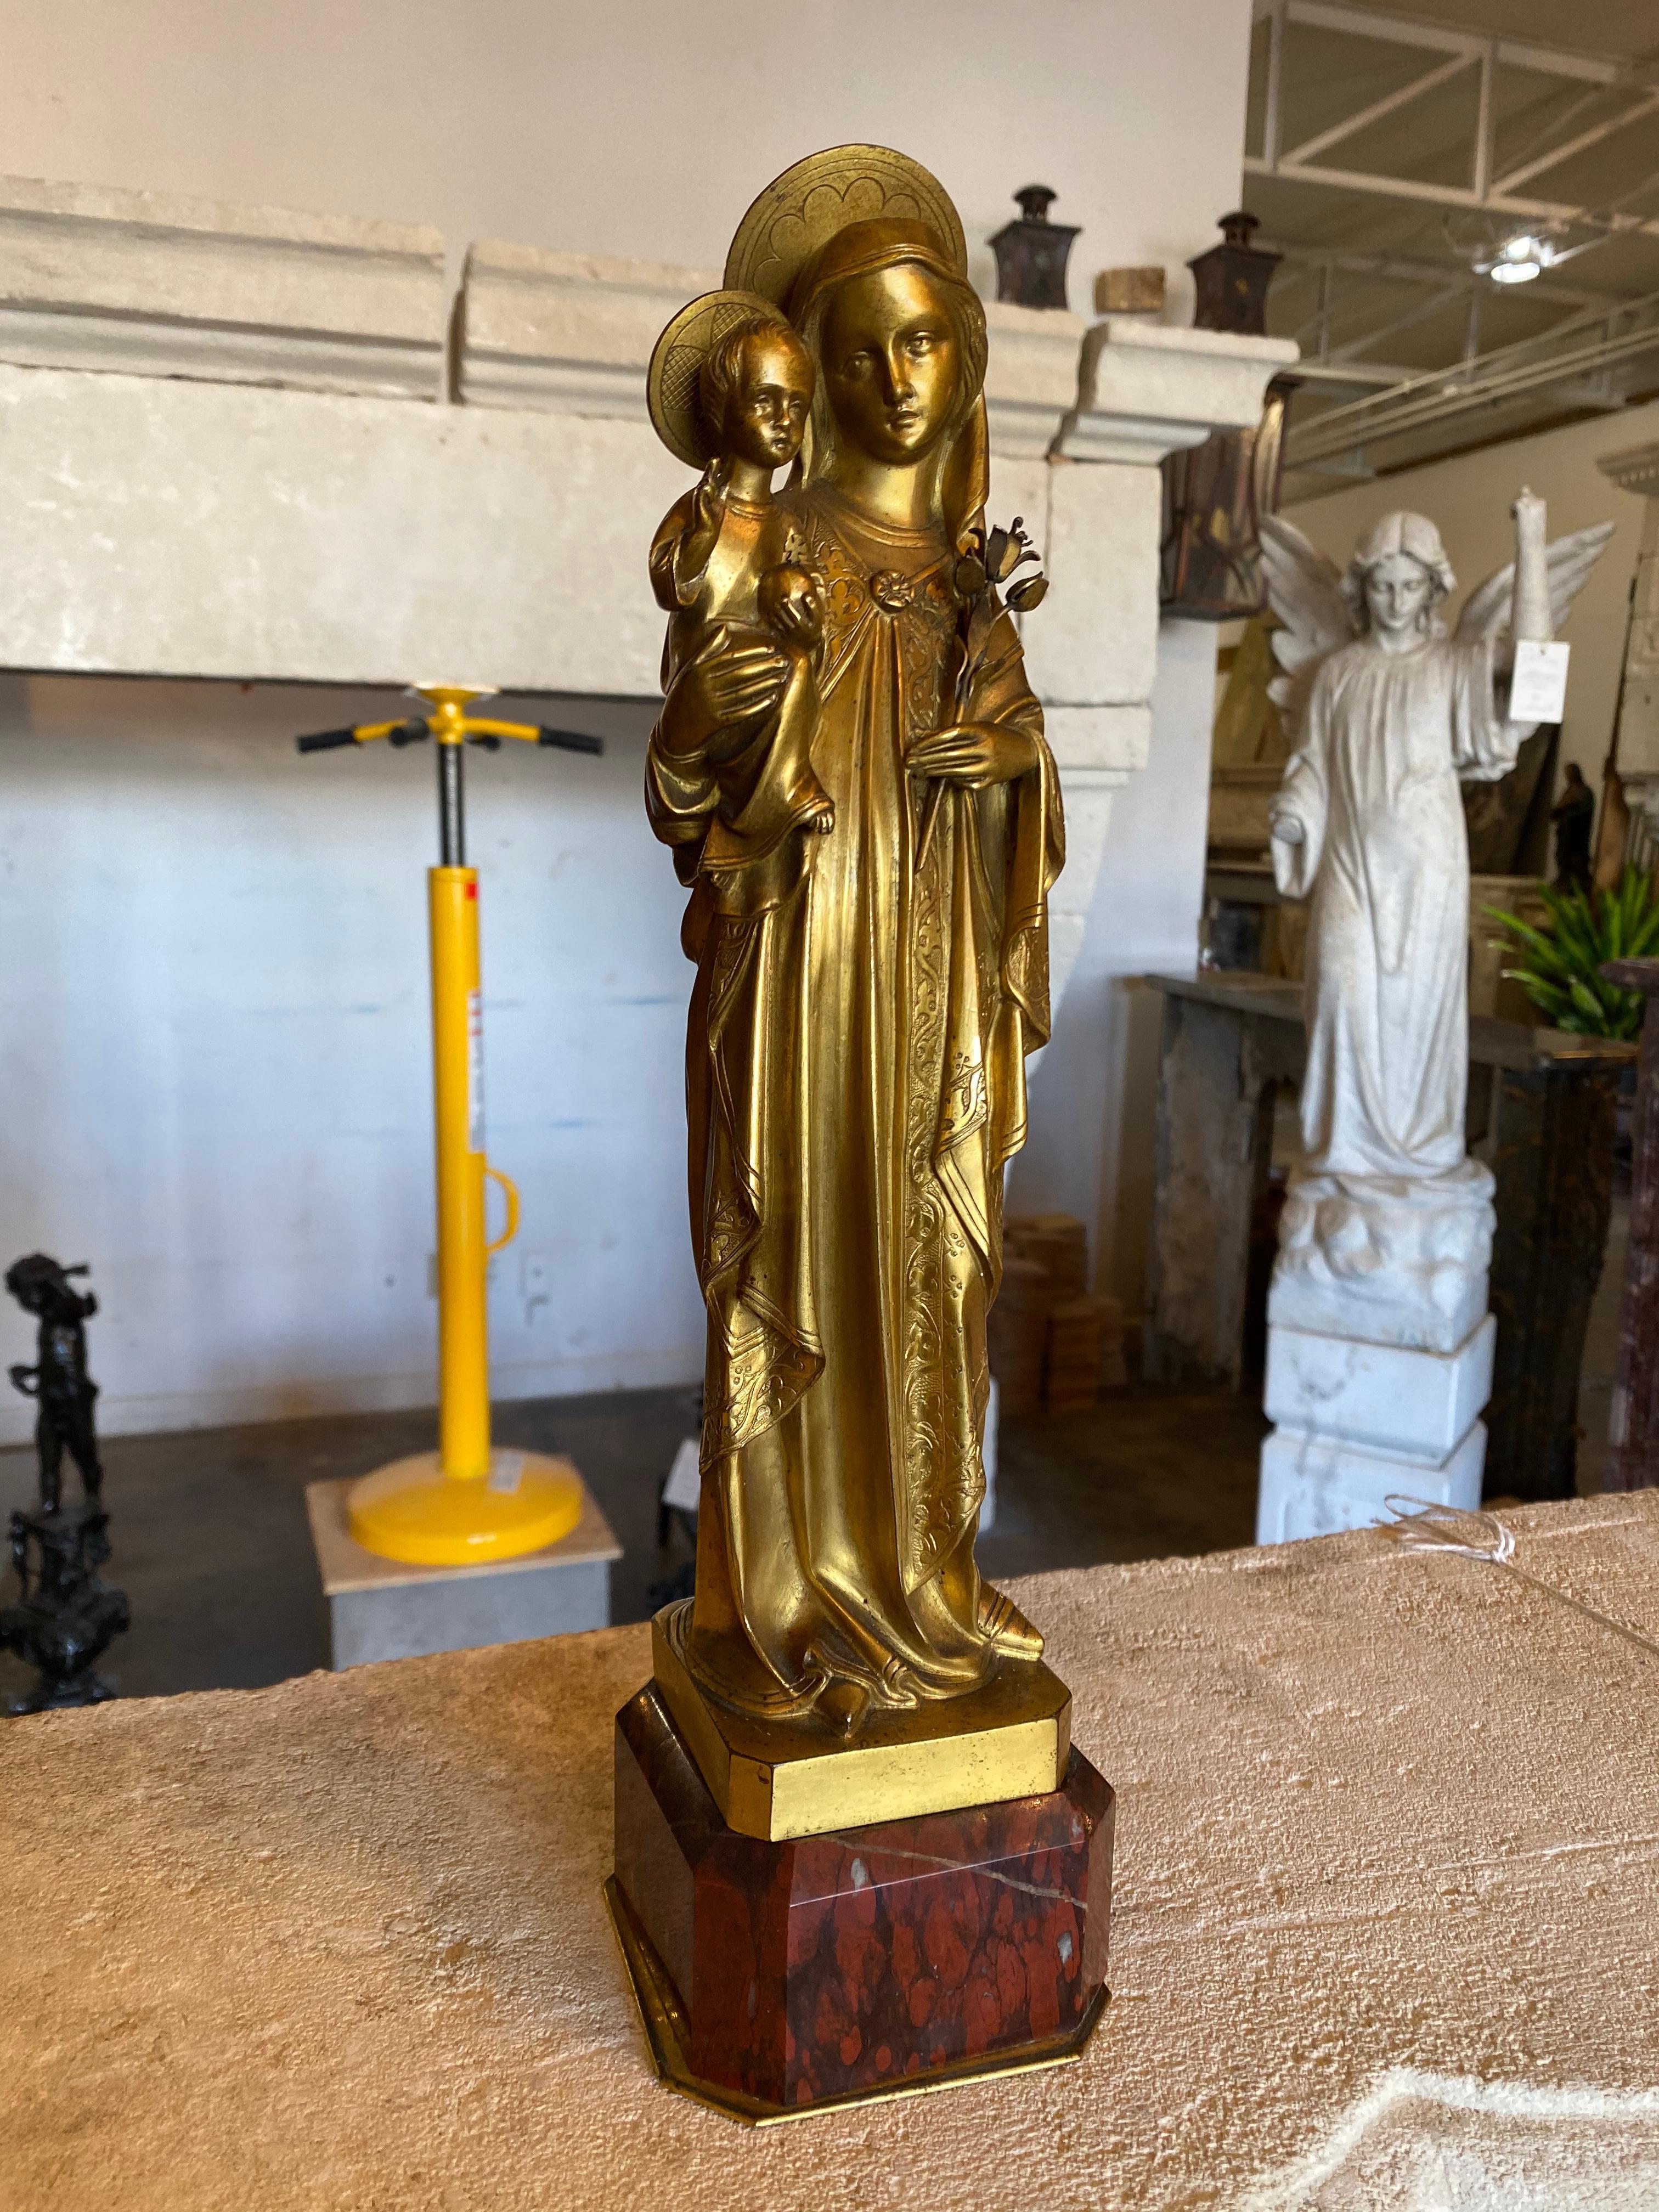 Diese Bronzestatue der Jungfrau Maria mit Kind stammt aus dem Frankreich der frühen 1900er Jahre. 

Abmessungen: 4'' T x 4'' B x 14'' H.